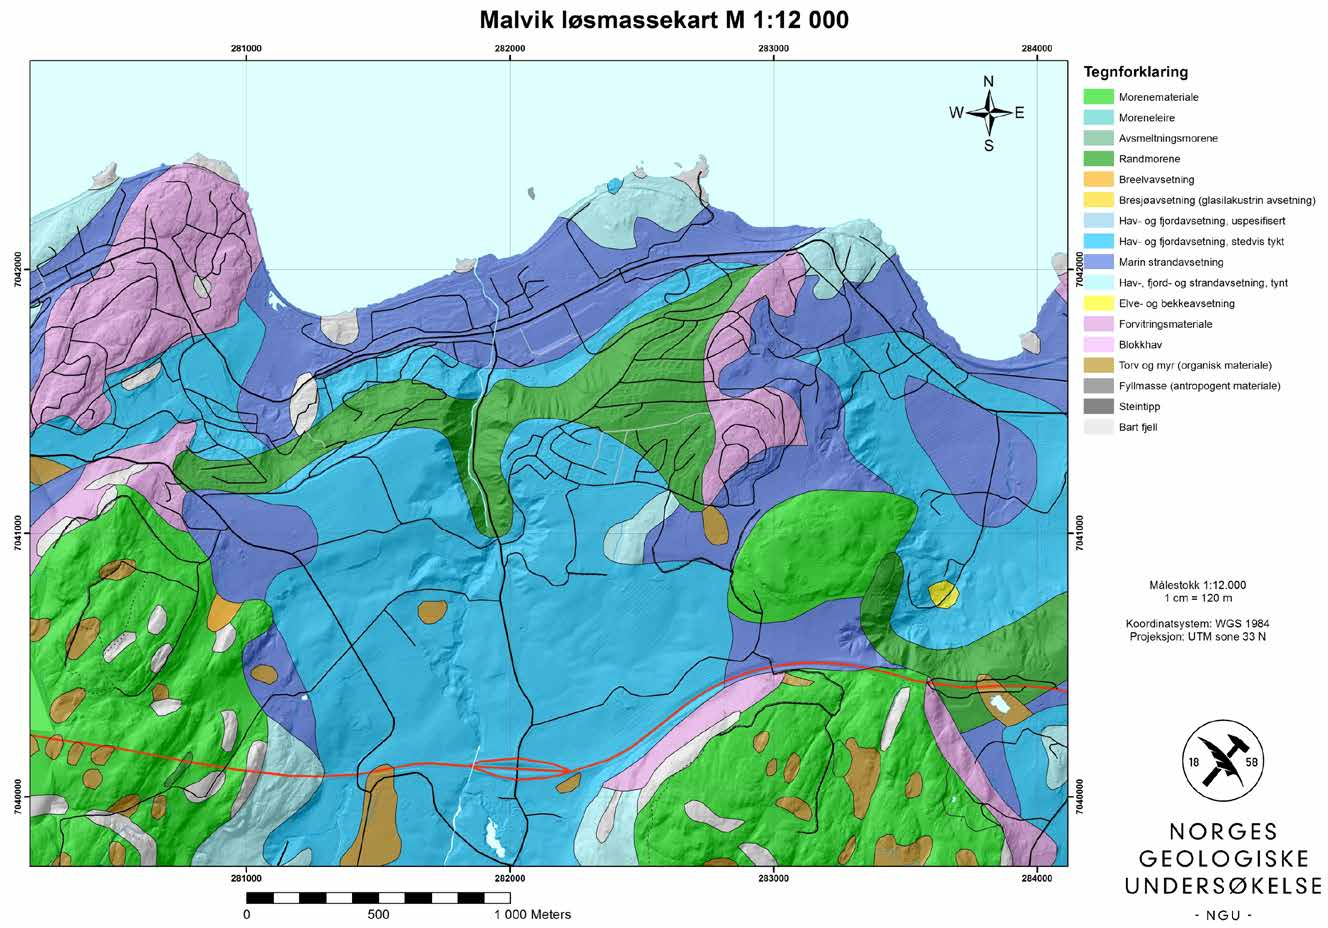 10.2. Løsmasser og marin grense i Malvik -